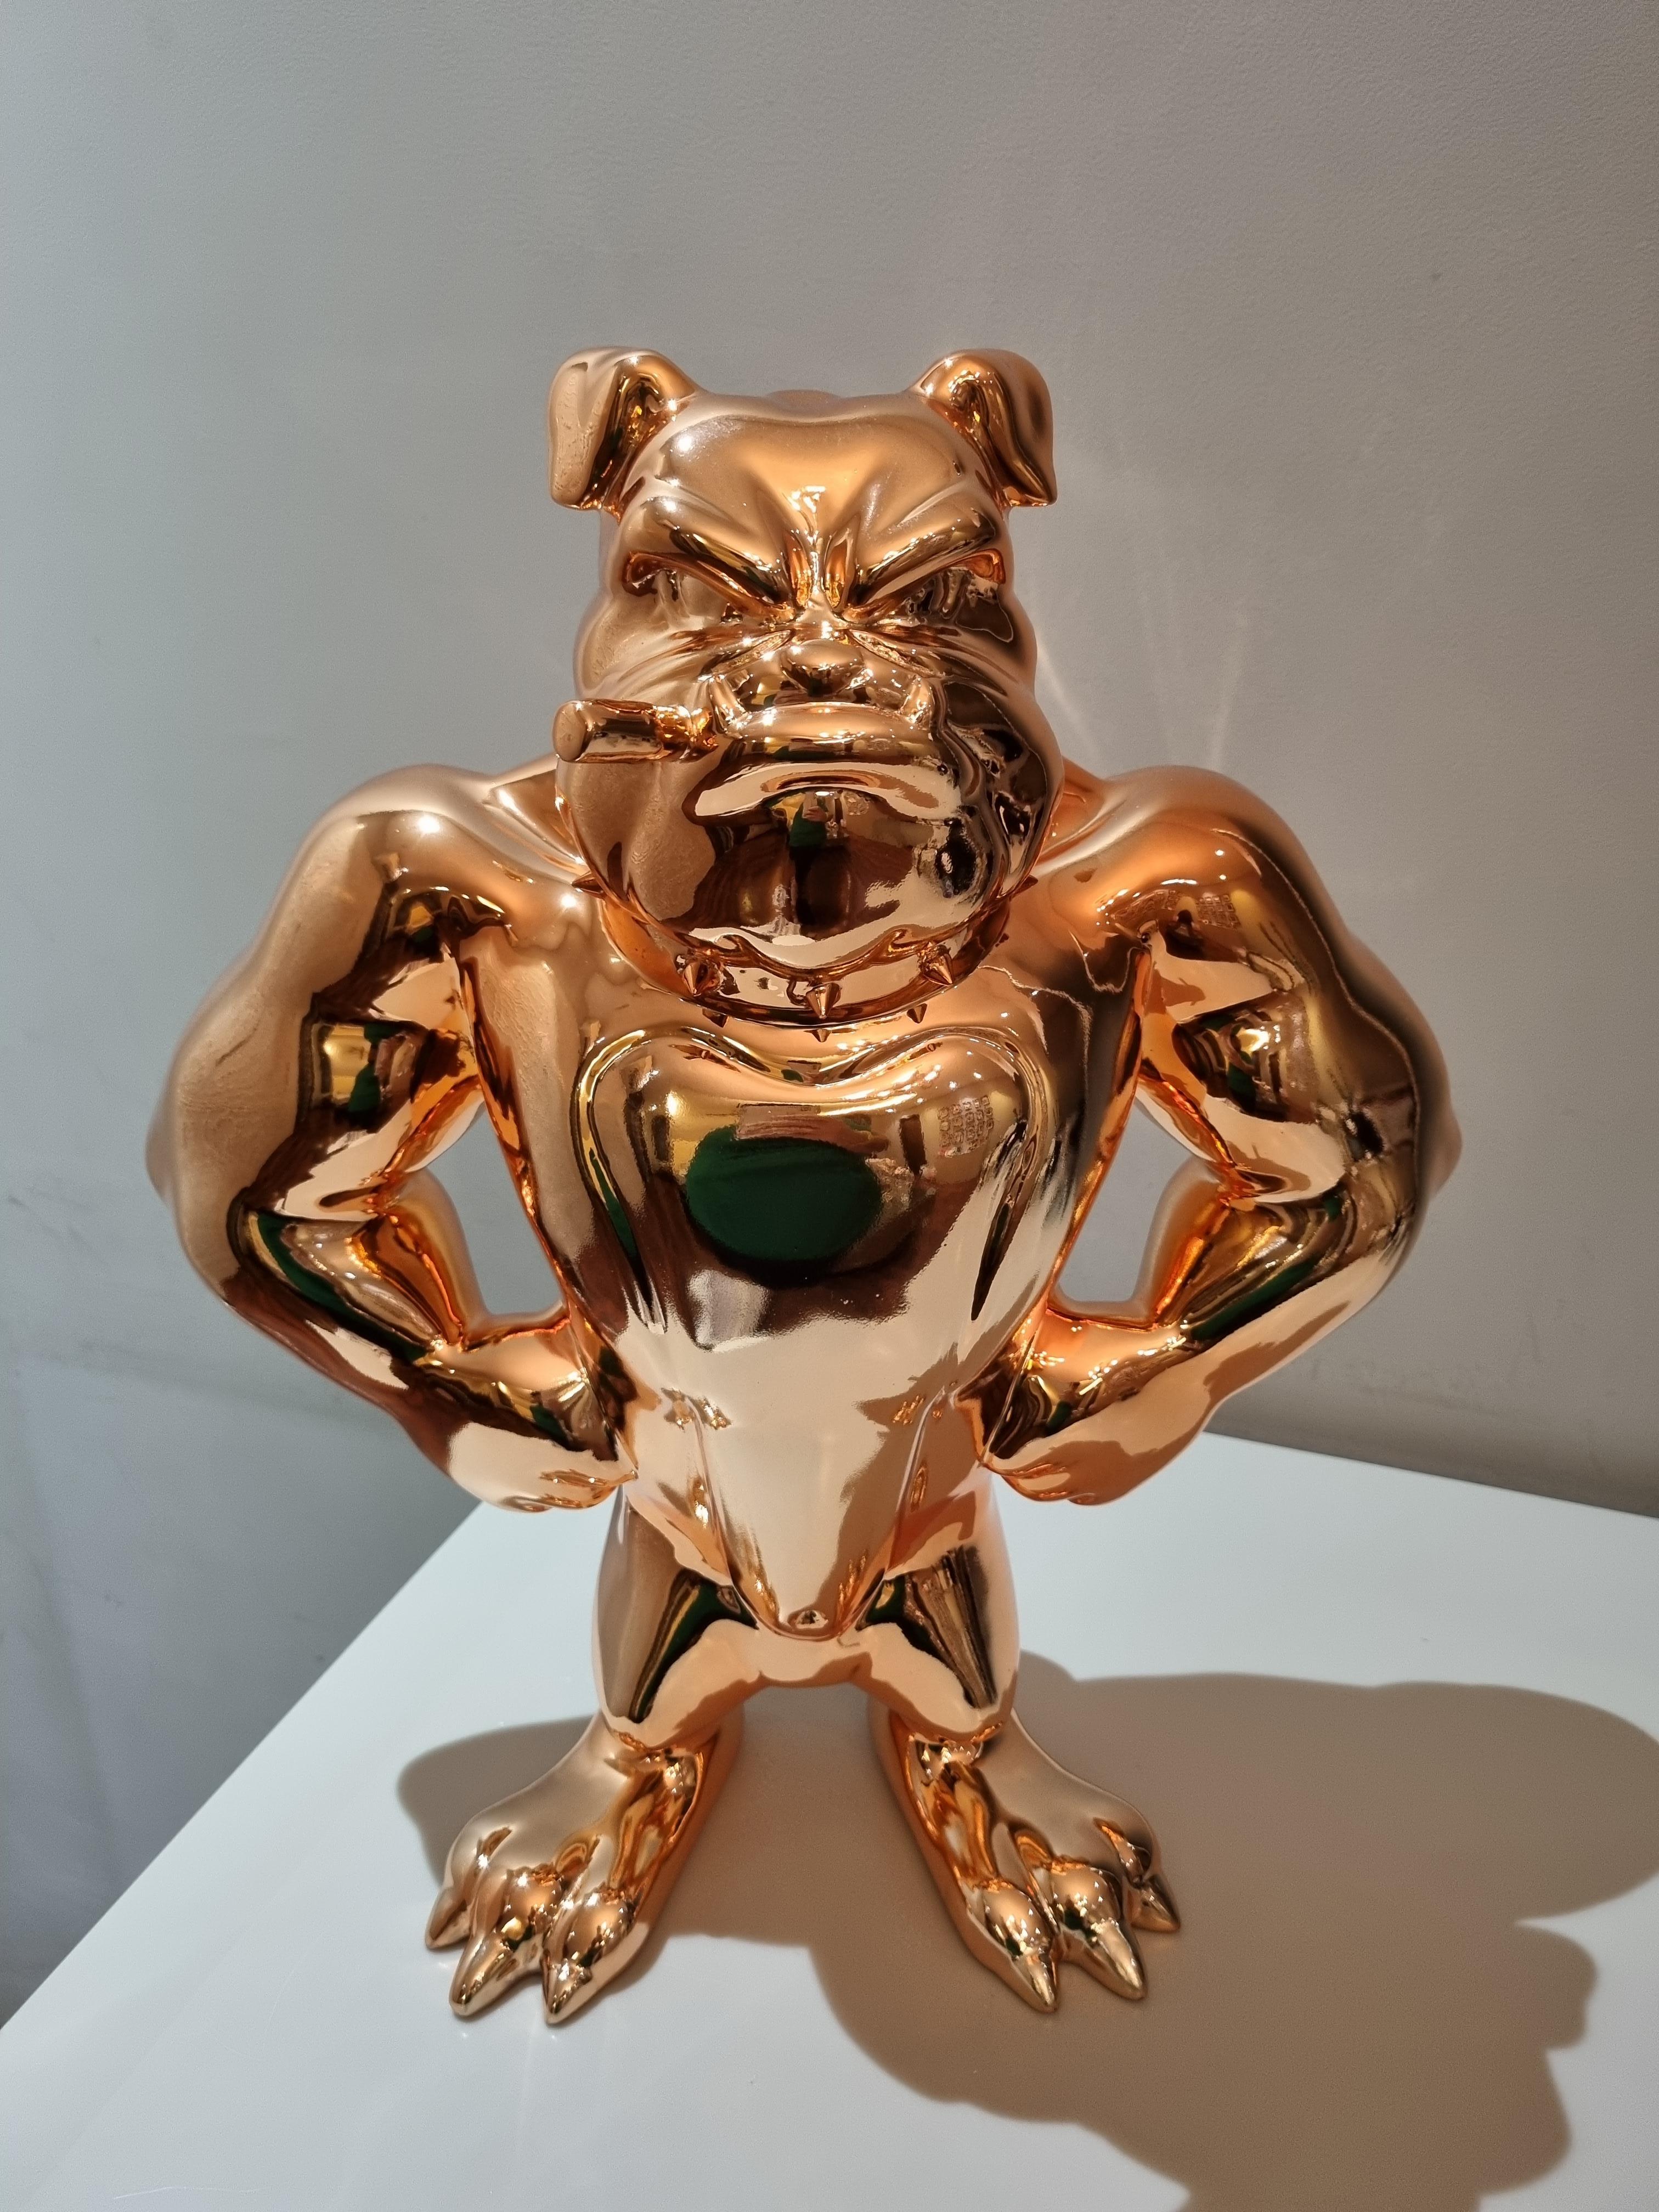 Boss Dog 2-originale ikonische Bulldogge Skulptur Figur-zeitgenössische Kunst-Kunstwerk